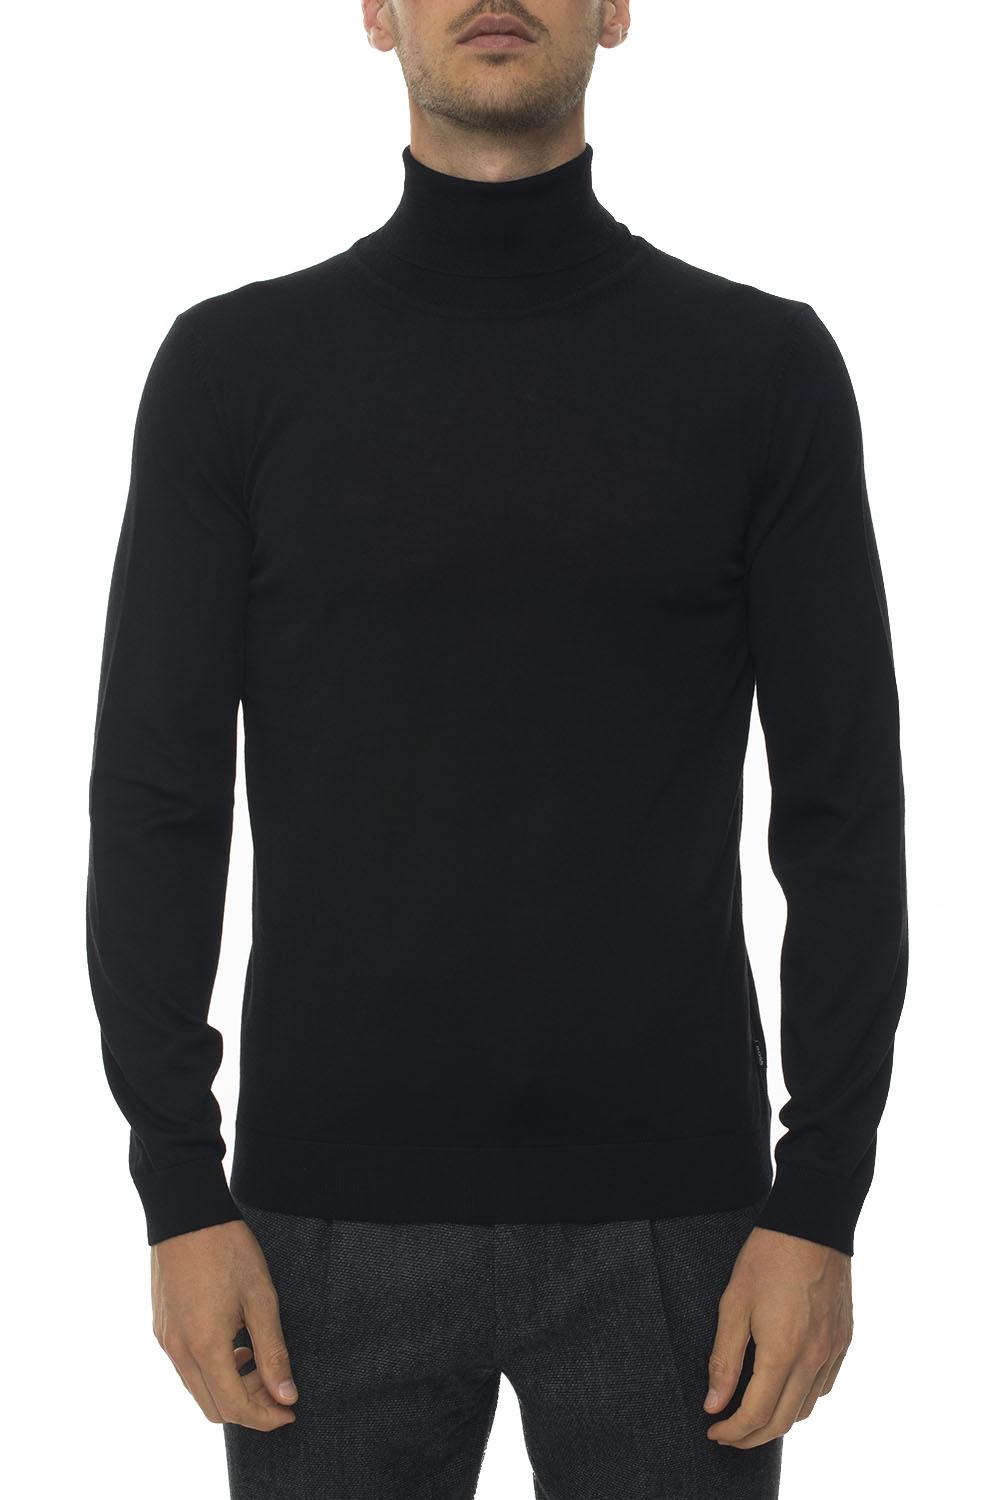 BOSS by Hugo Boss Turtleneck Pullover Black Wool for Men - Lyst